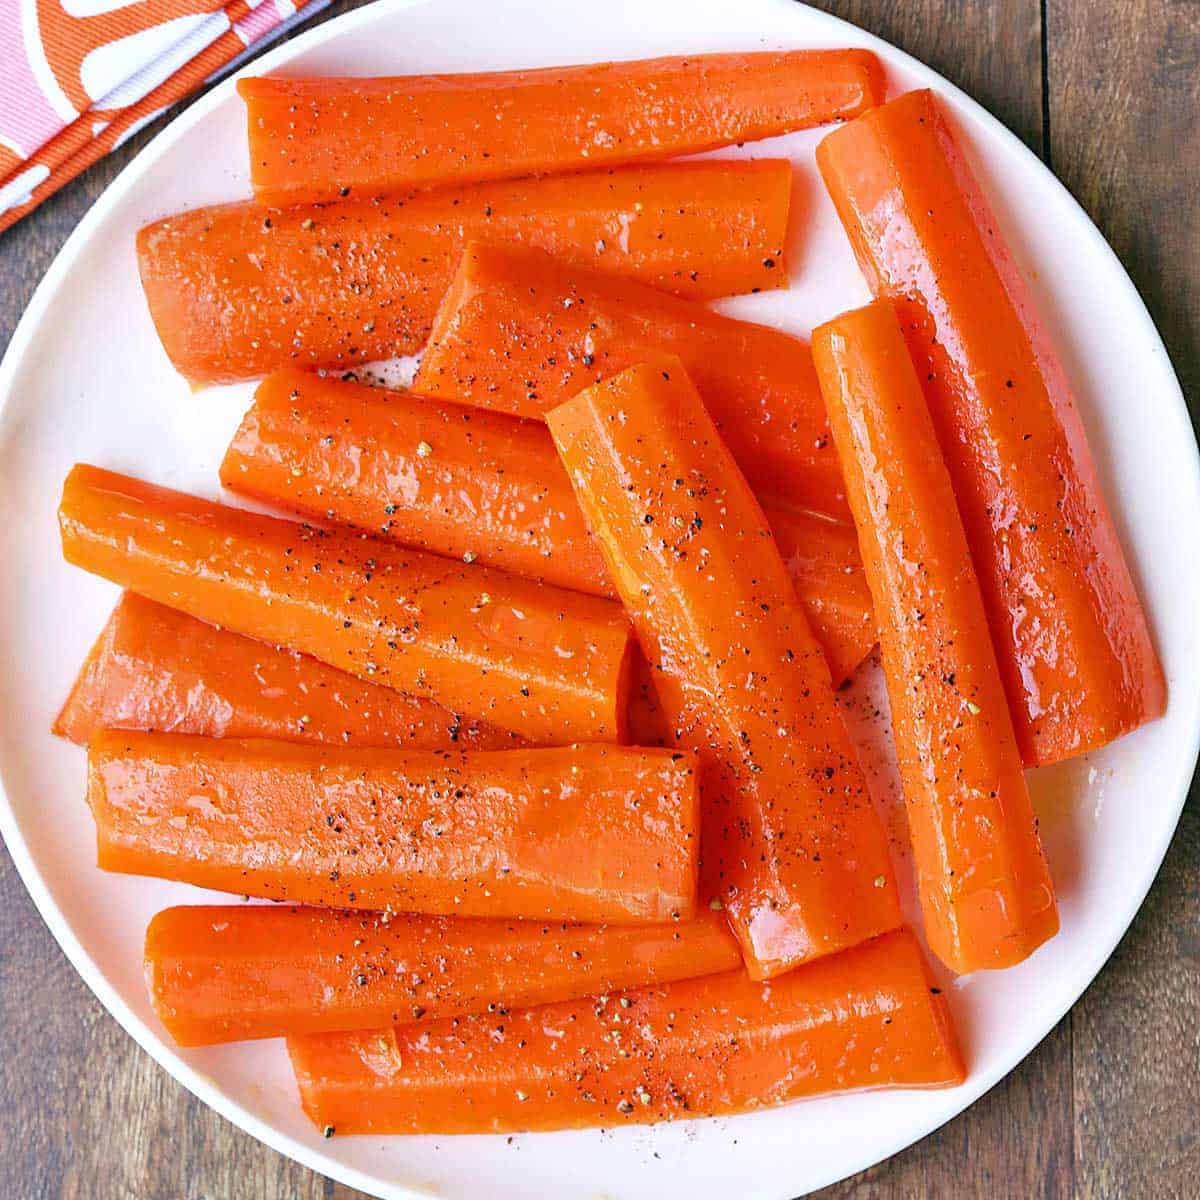 Carrot tinder